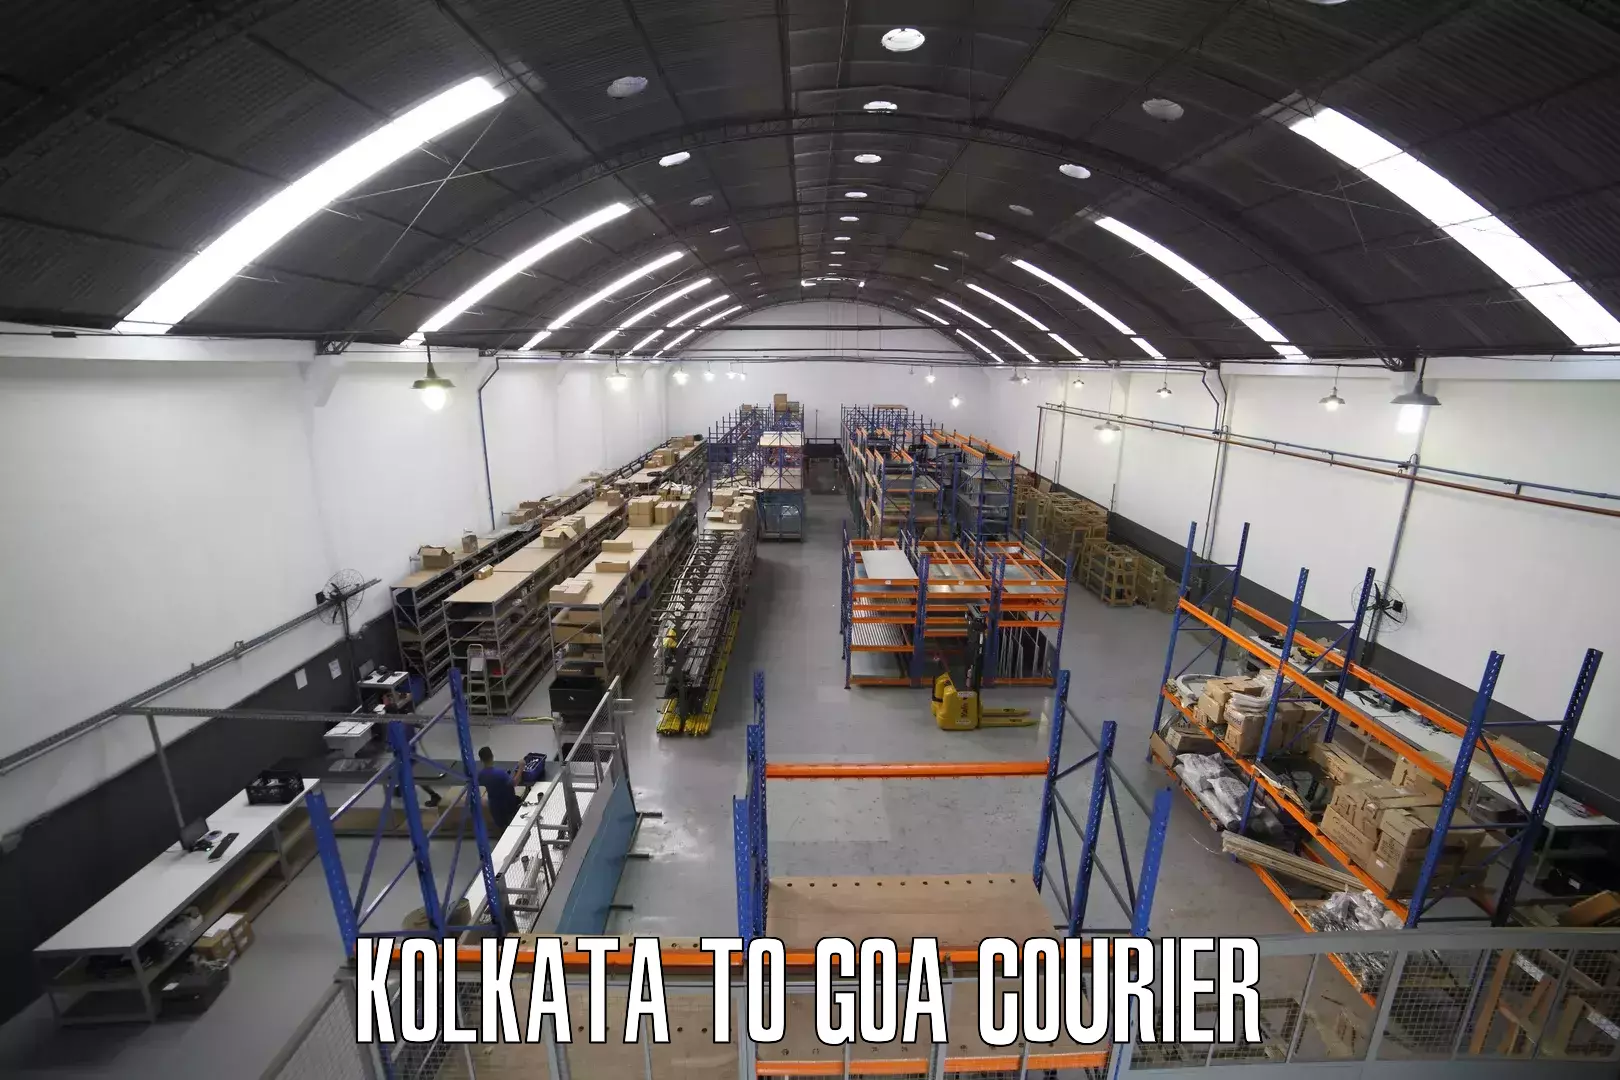 Weekend courier service Kolkata to Goa